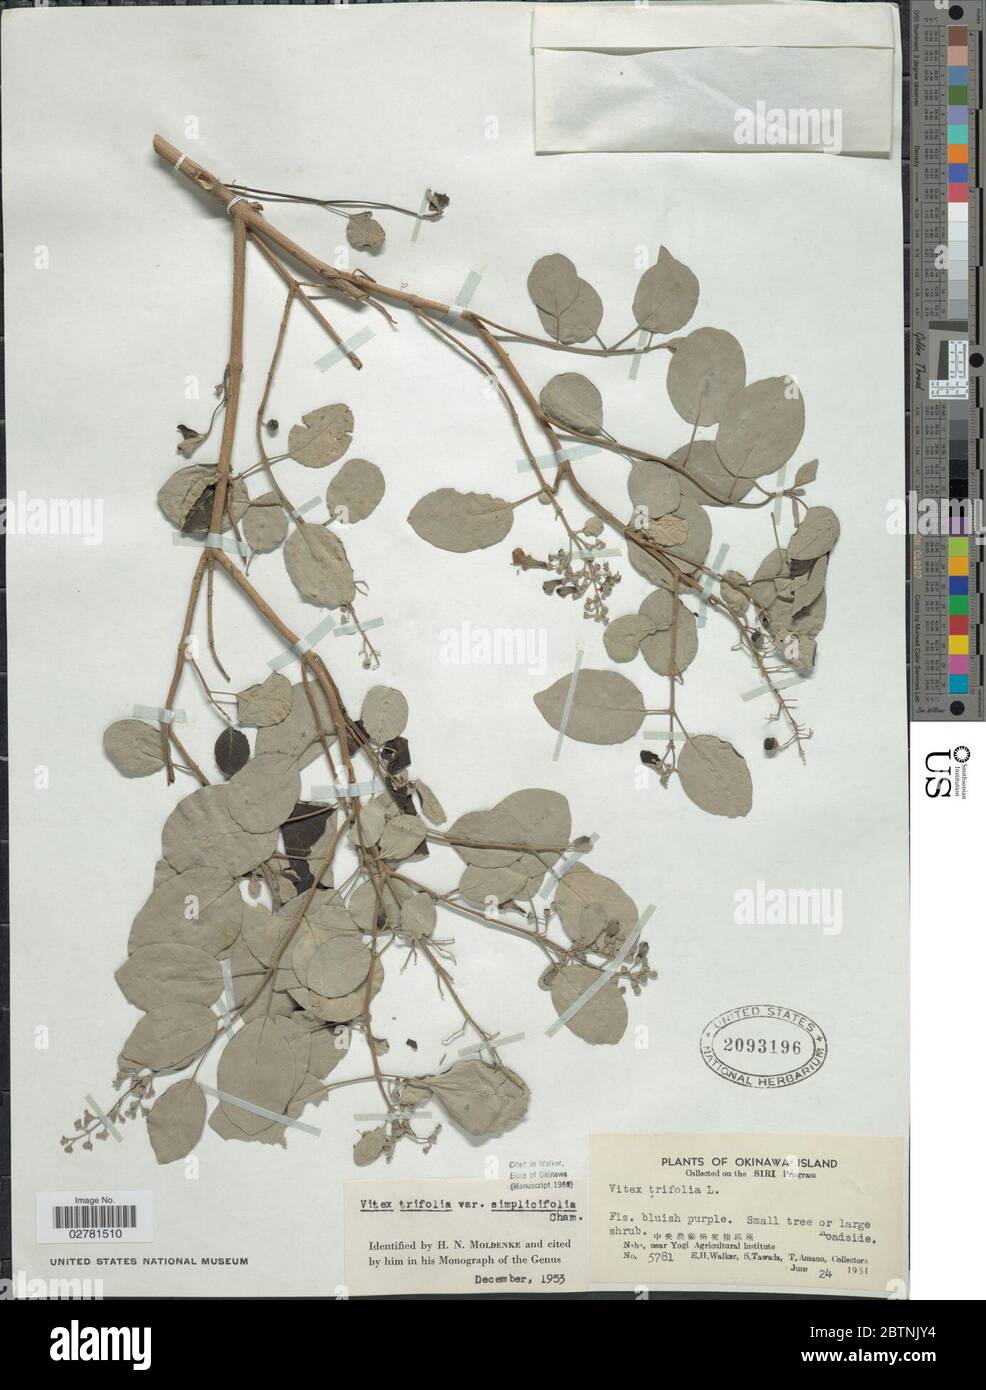 Vitex trifoliata var simplicifolia Cham. Stock Photo